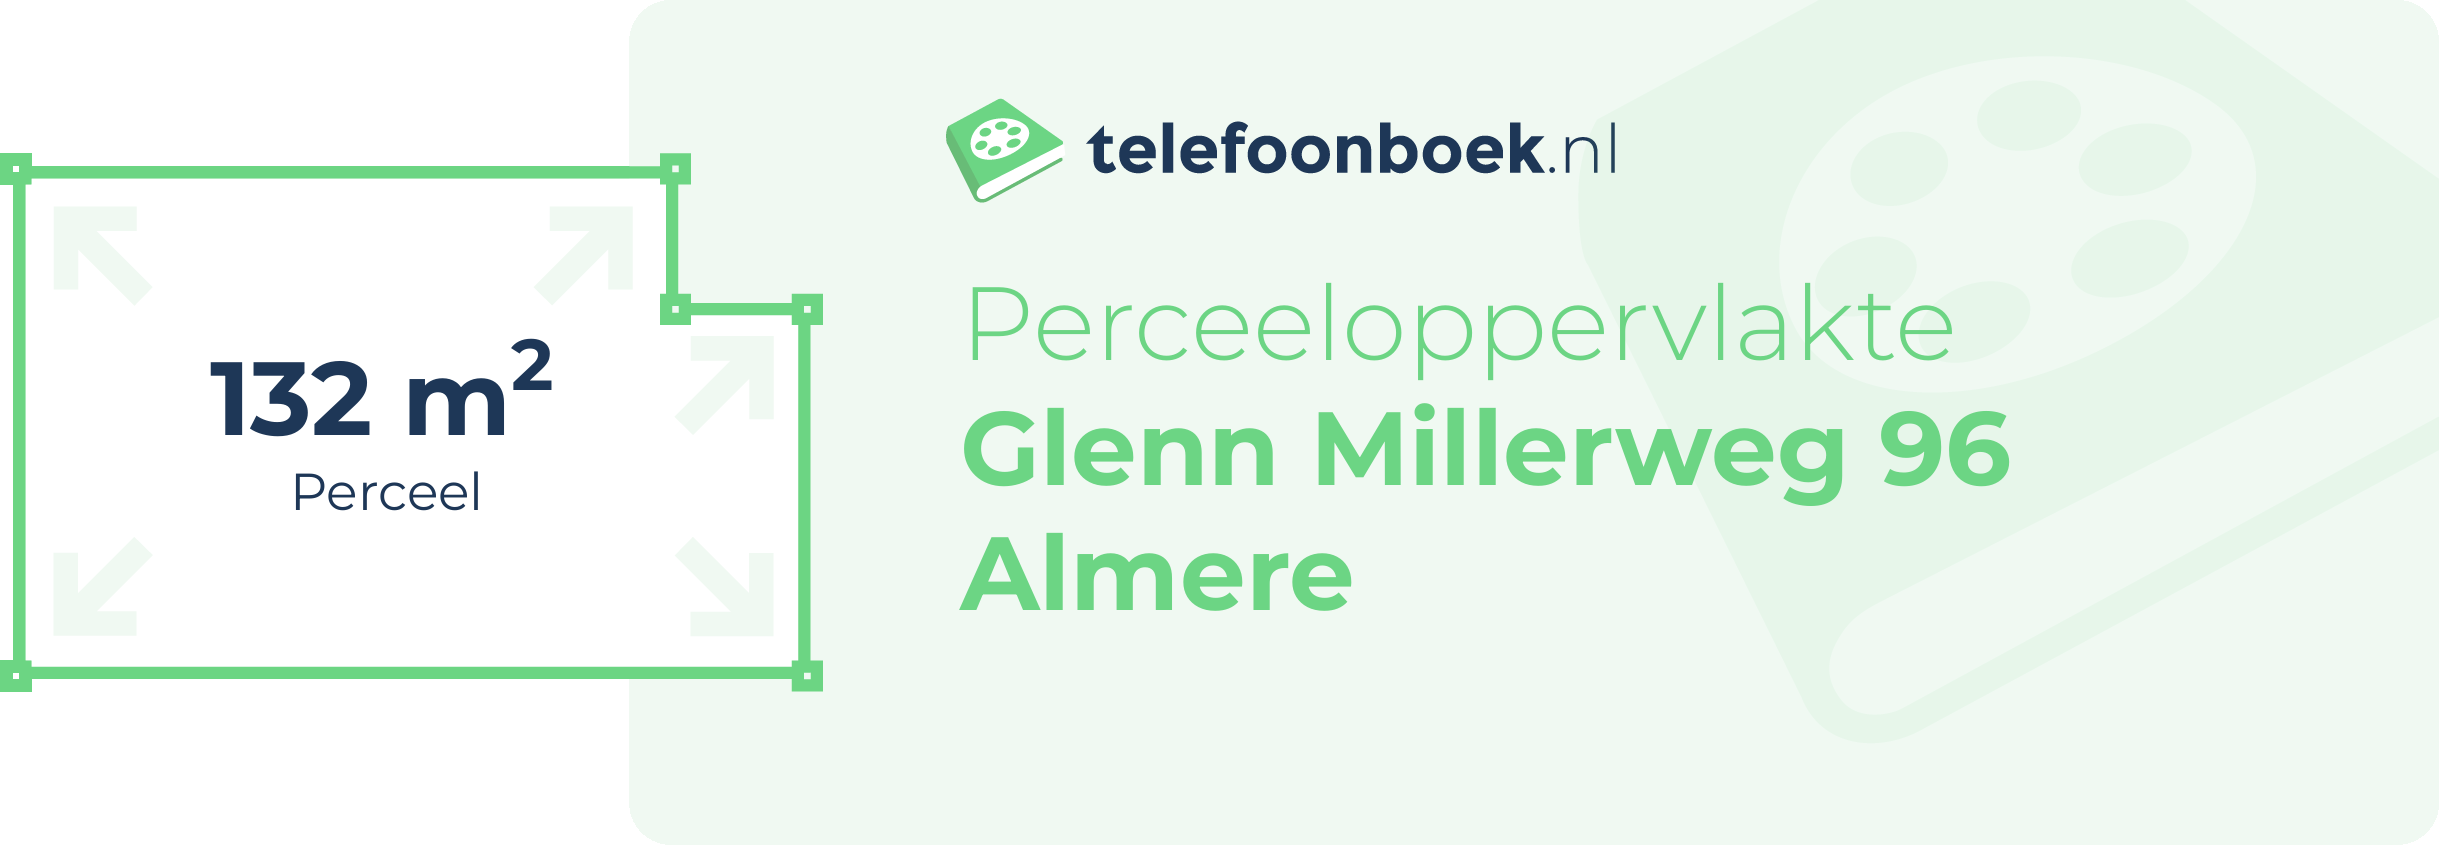 Perceeloppervlakte Glenn Millerweg 96 Almere